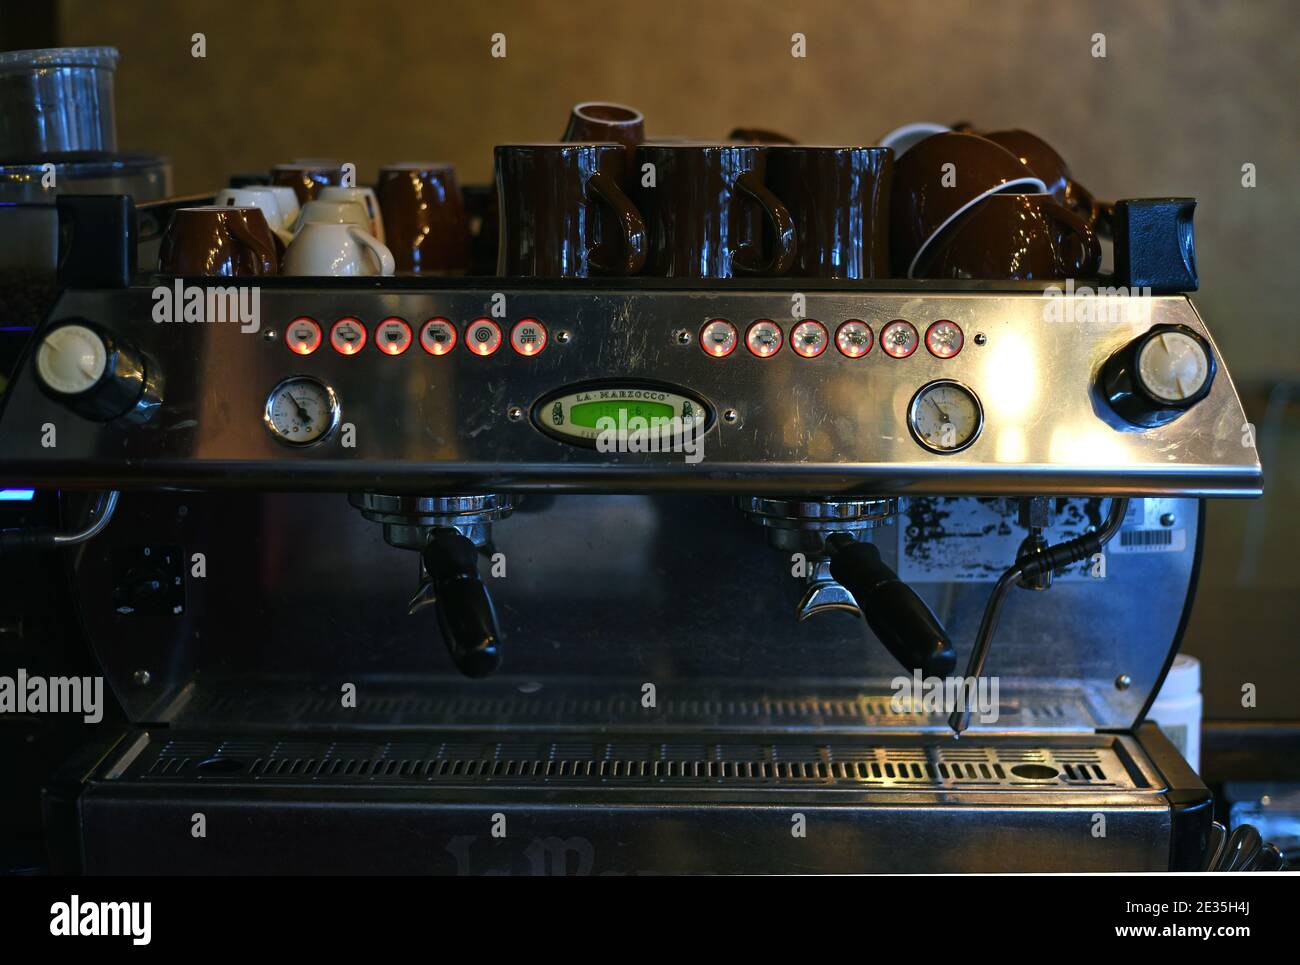 La llegada de la máquina de café espresso La Marzocco a EUA